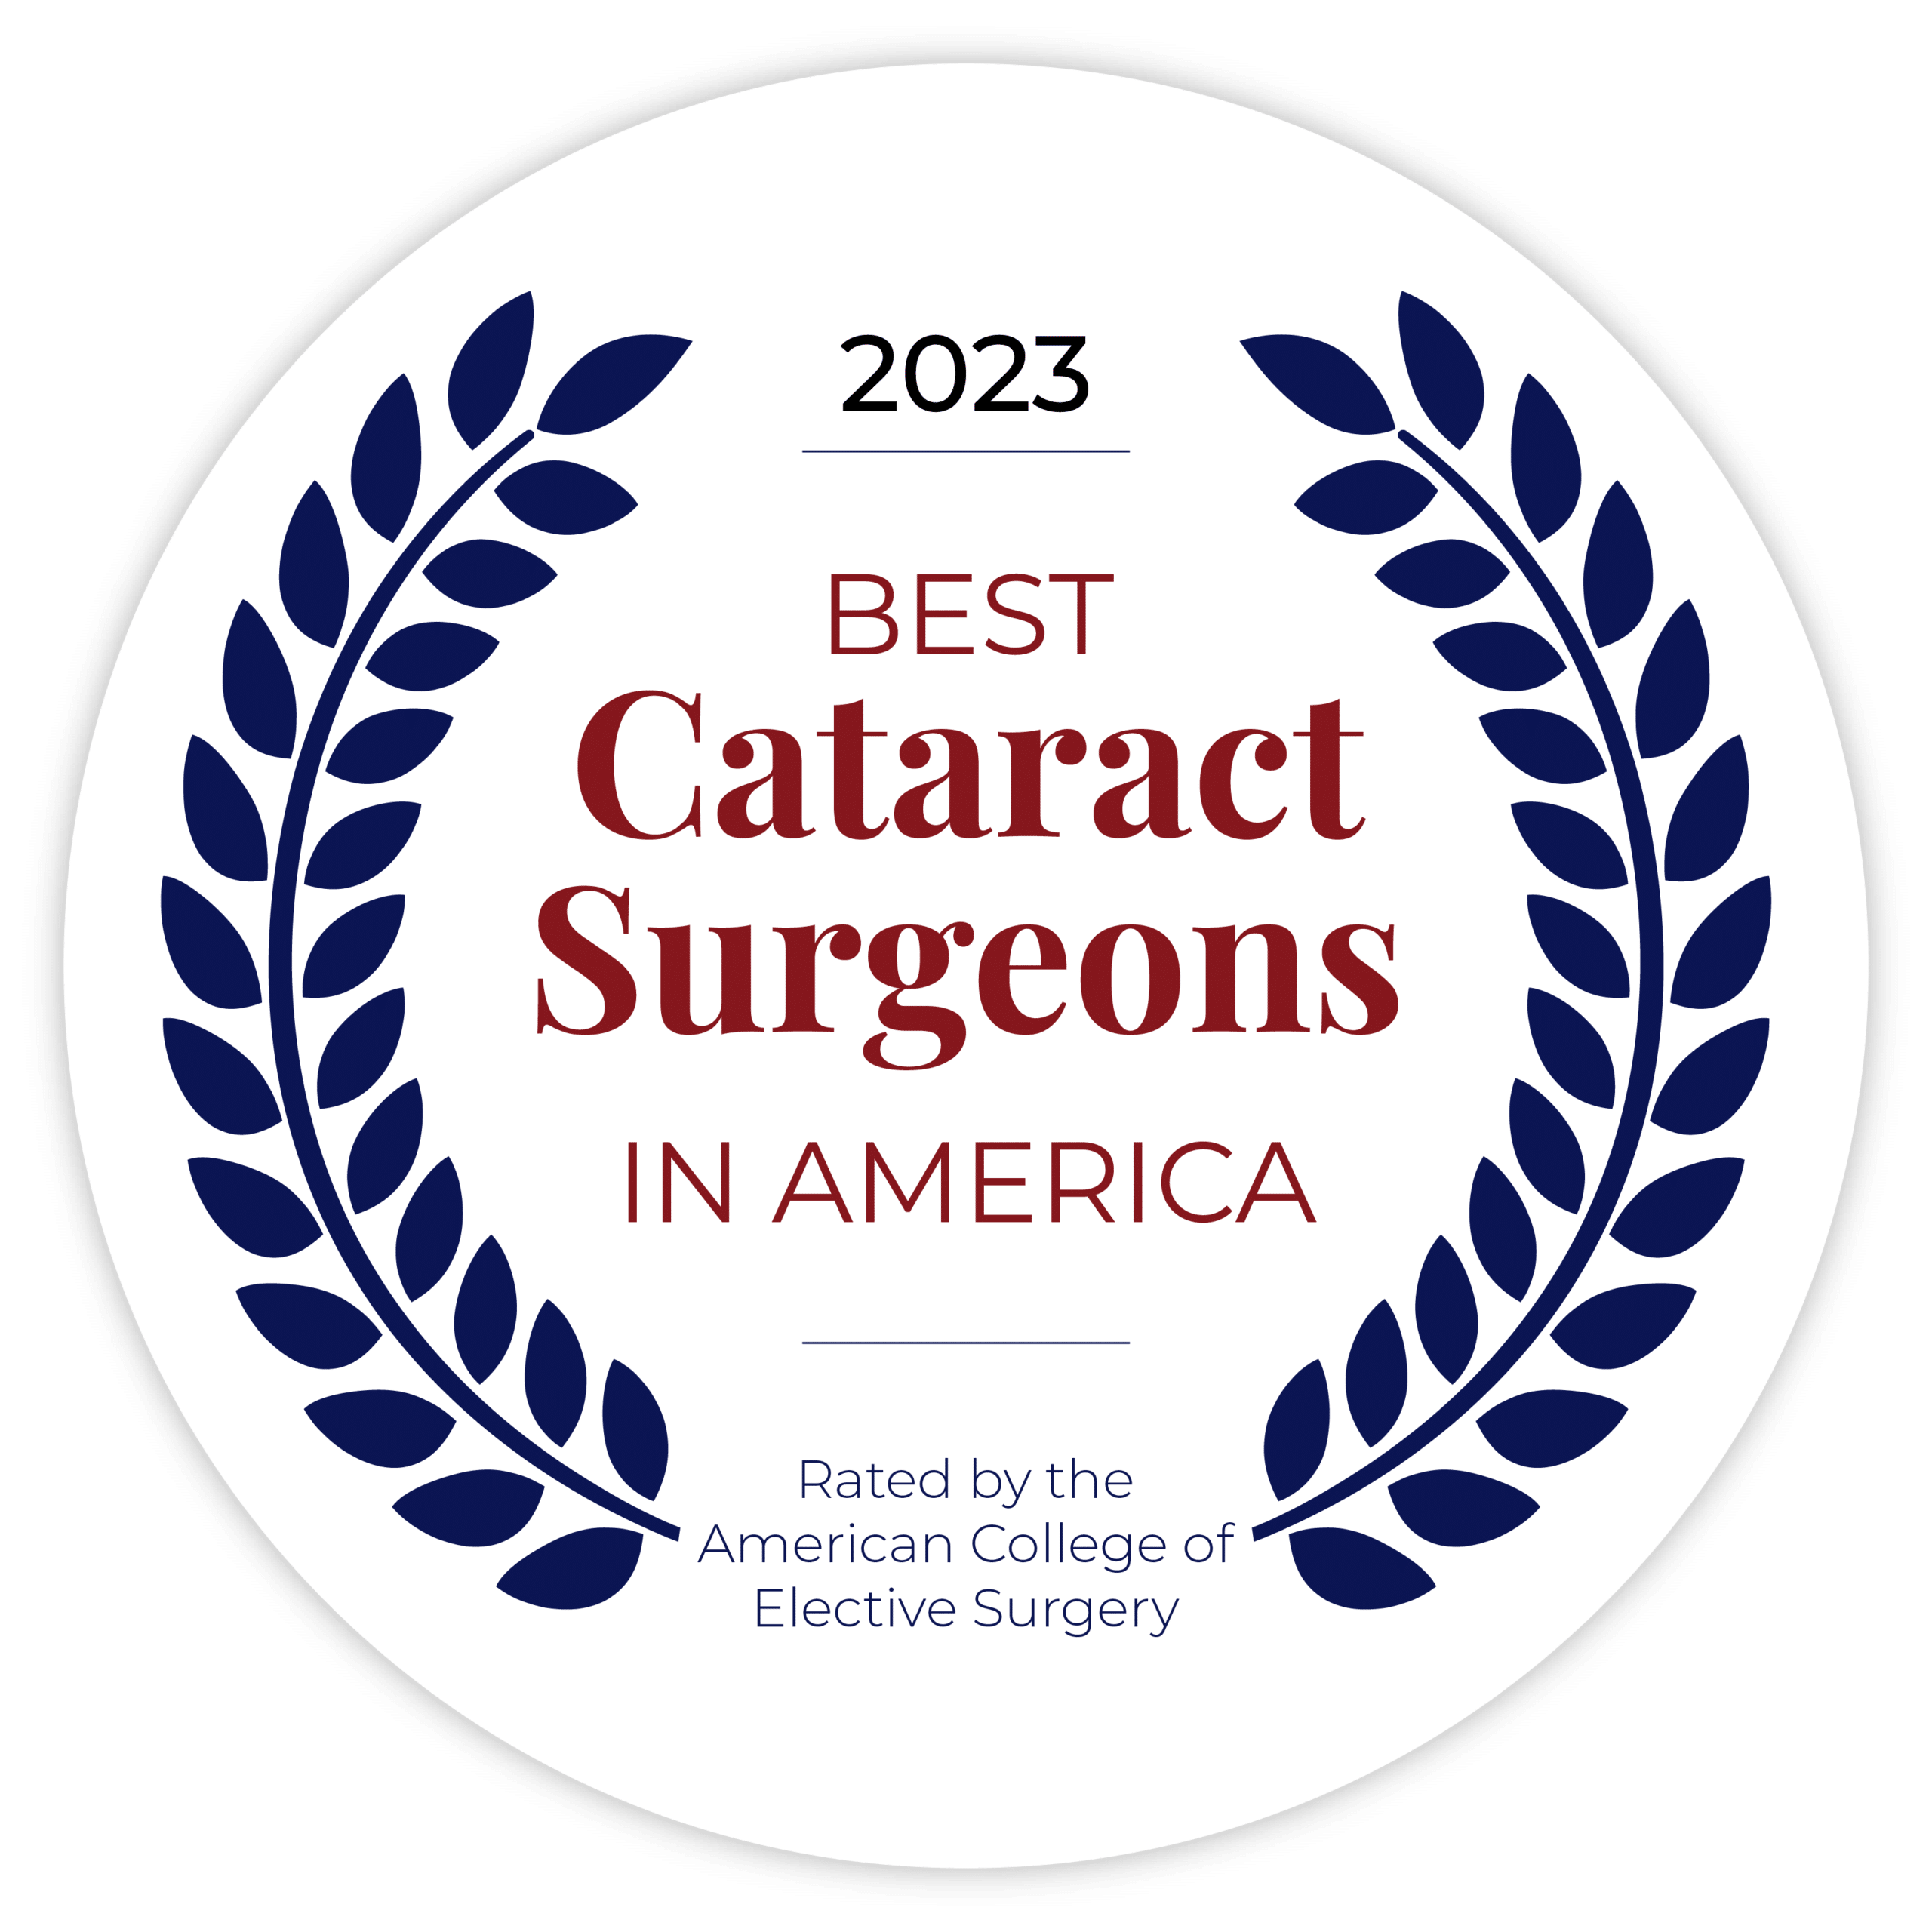 best cataract surgeons in america award